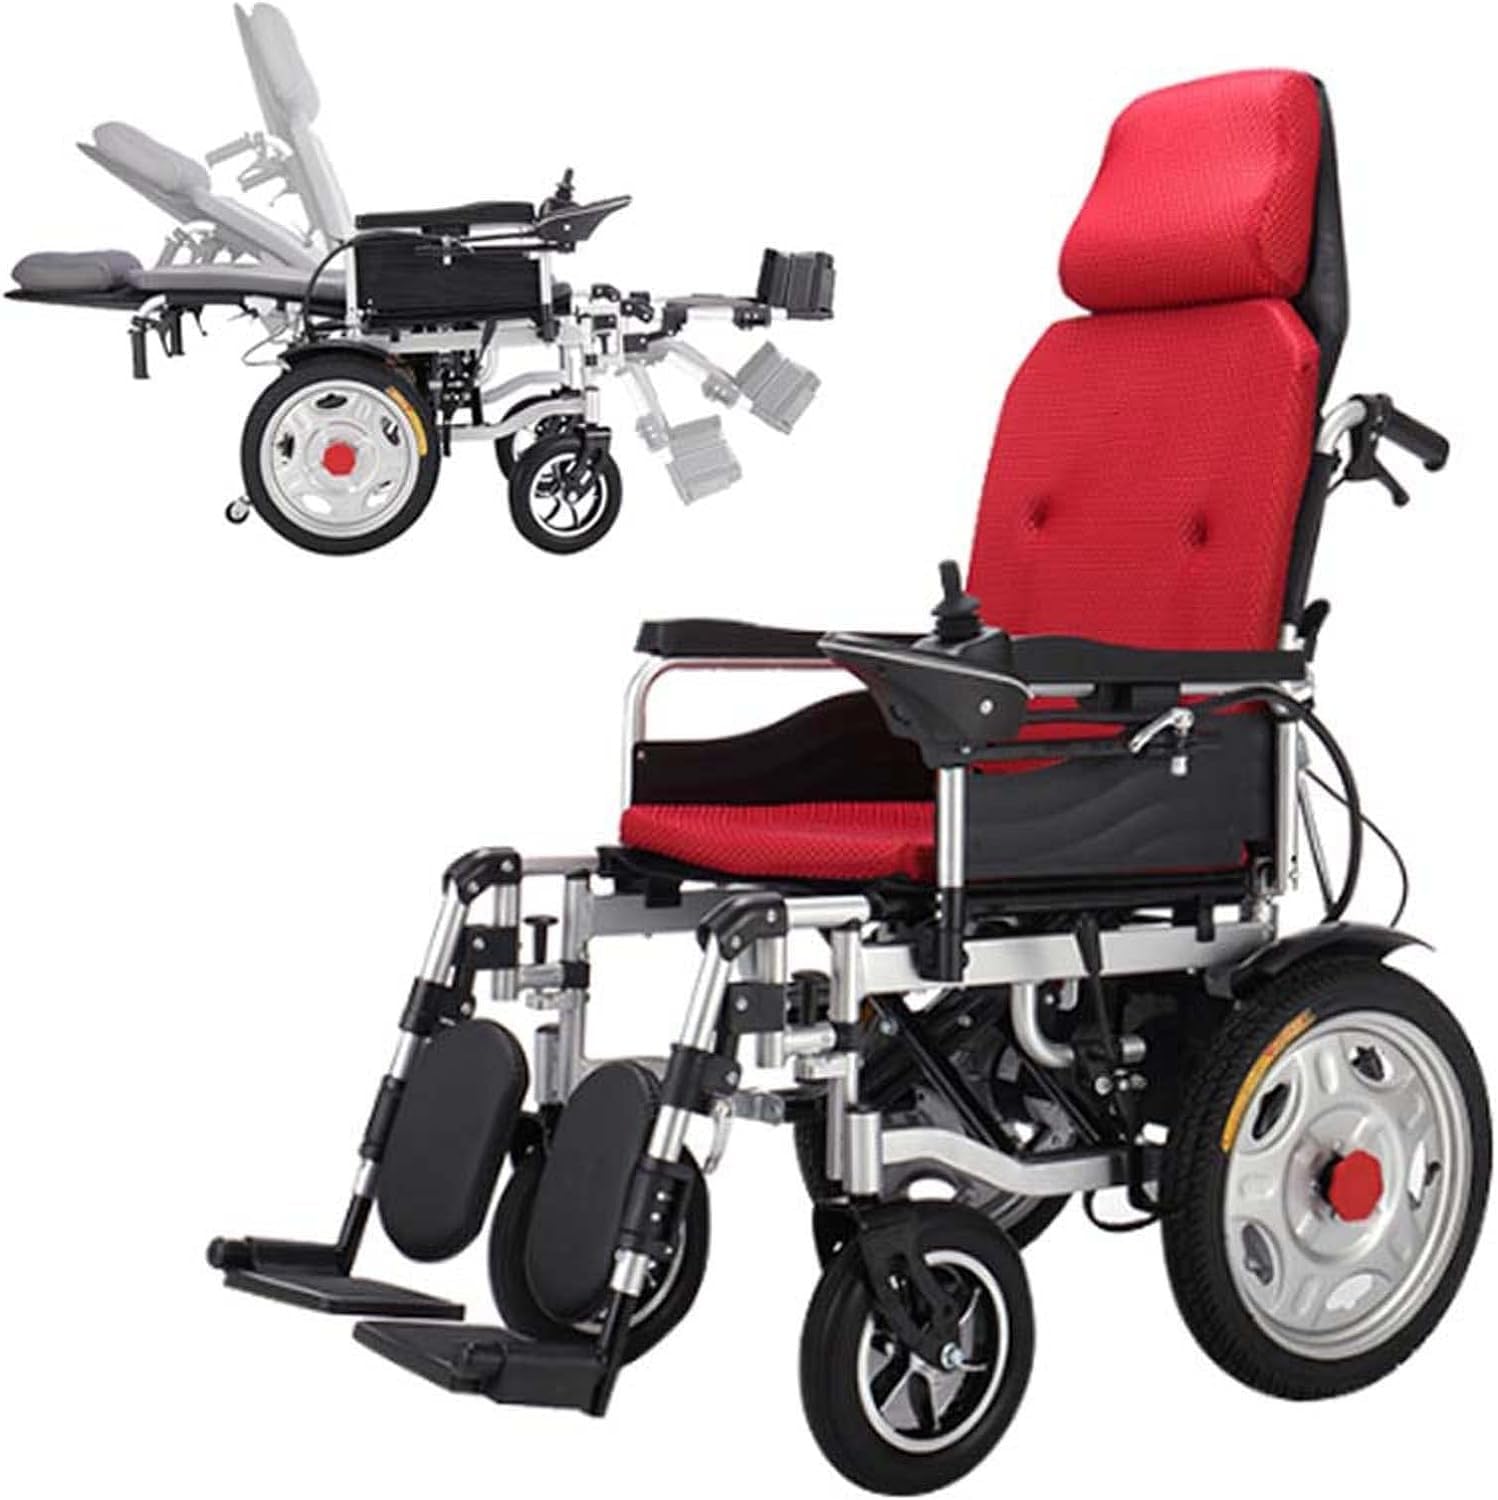 Elektro-Rollstuhl - Klapprollstuhl Elektrisch Mit Verstellbare Rückenlehne & Fußstütze, 24V12ah Hochleistungsbatterie, Elektrischer Rollstuhl Faltbar 2